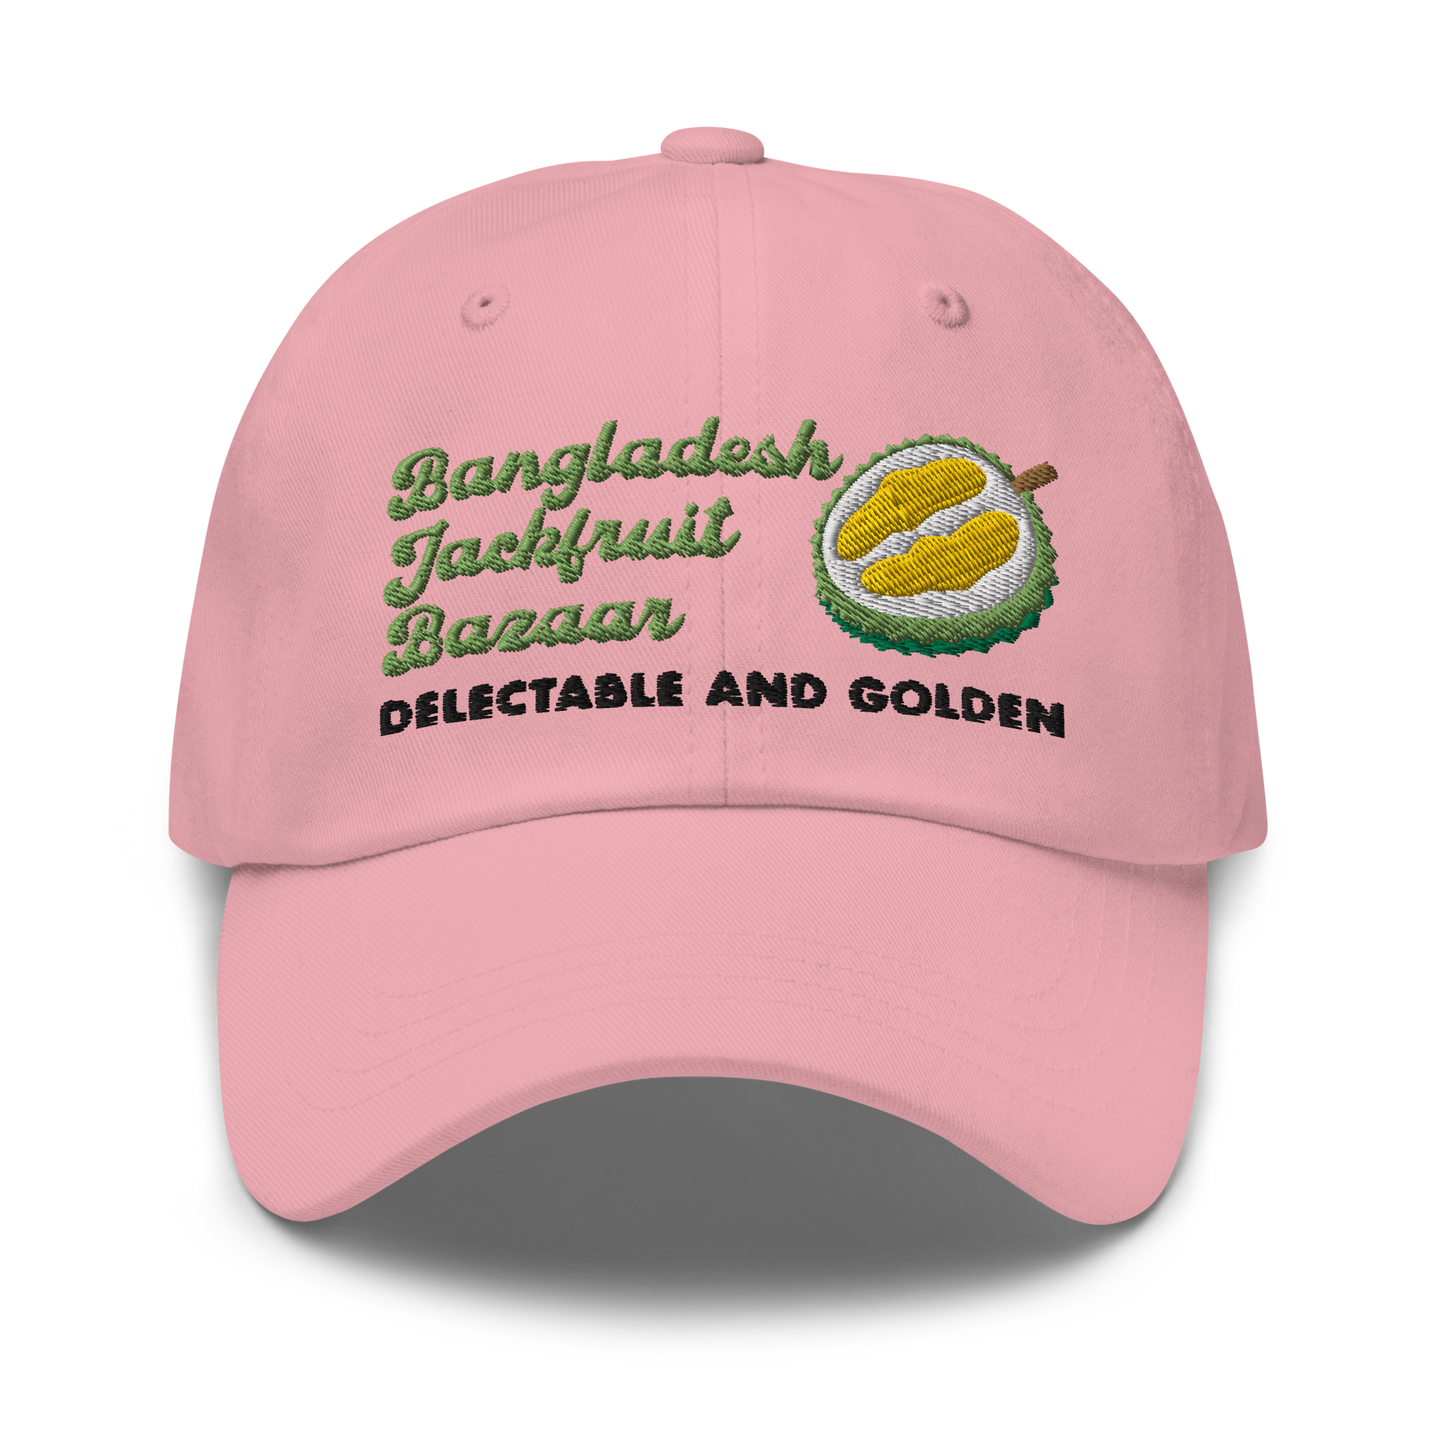 Bangladesh Jackfruit Bazaar Dad Hat